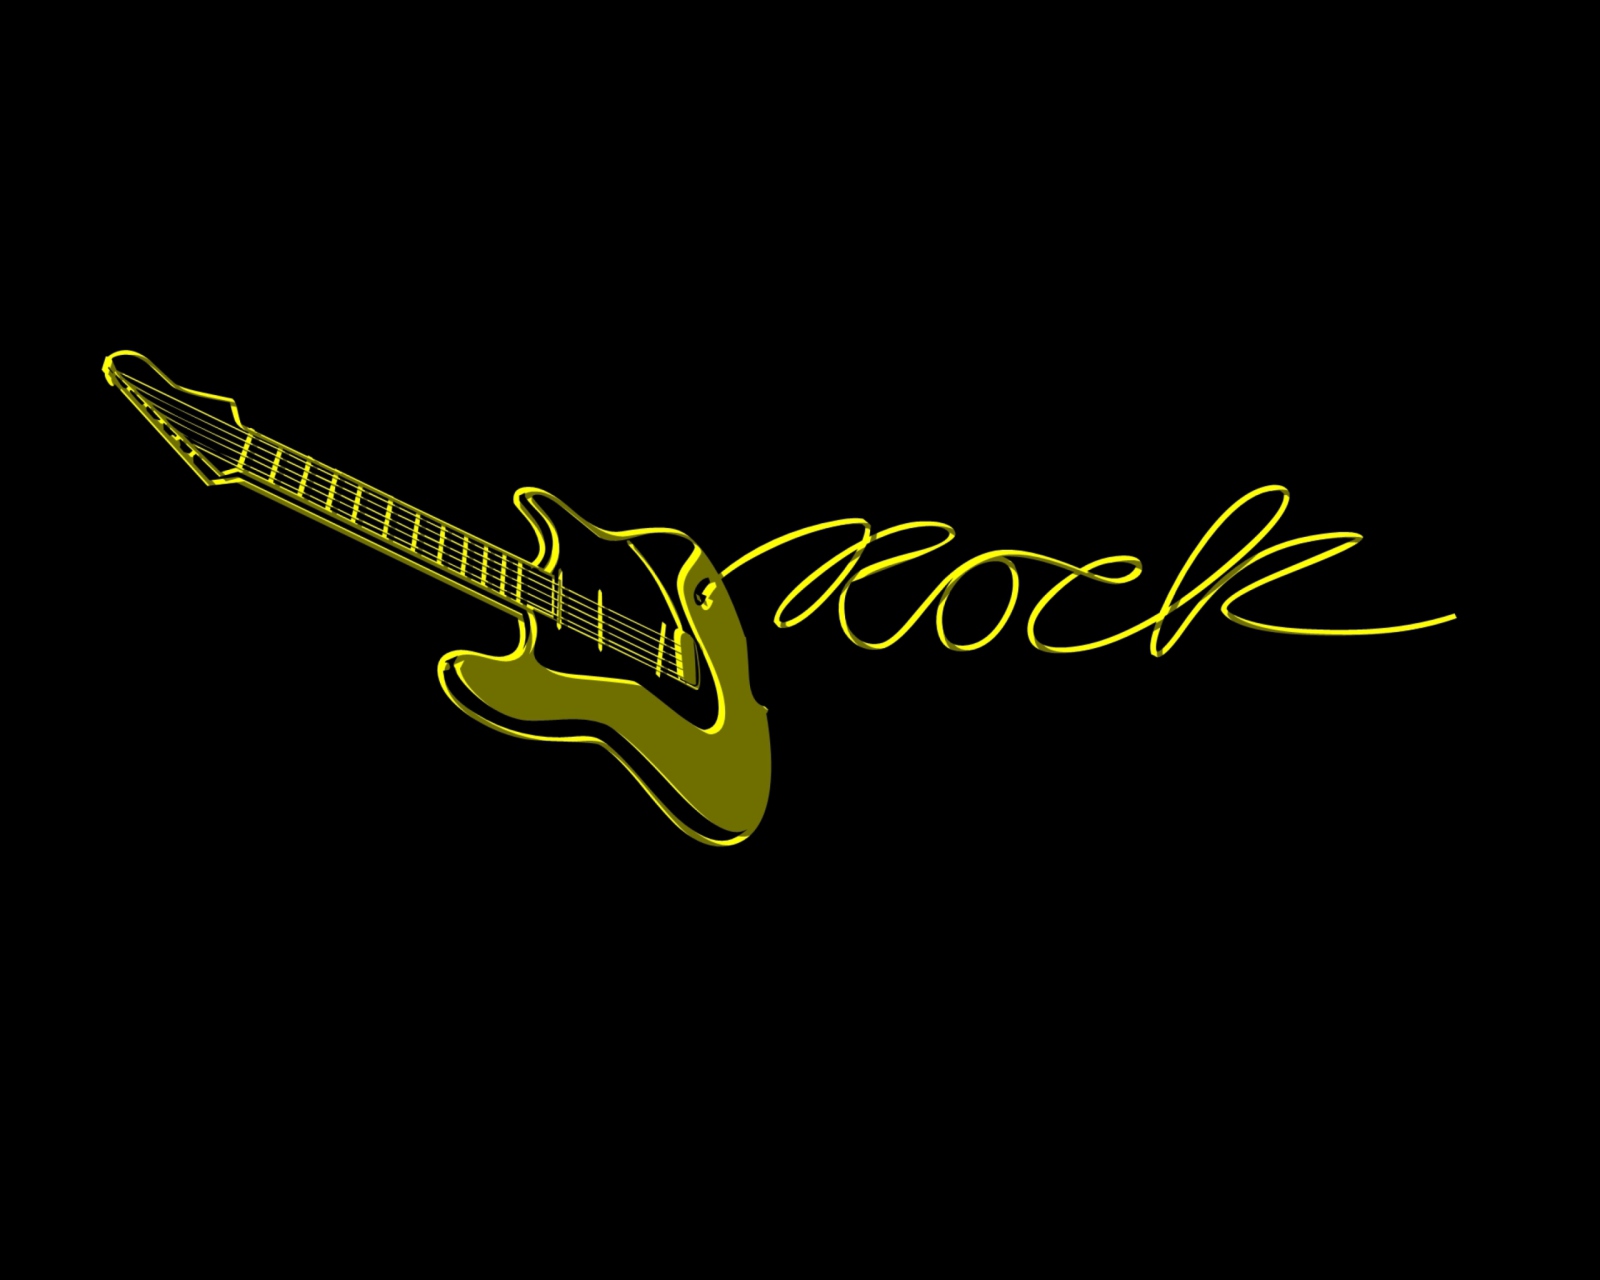 Sfondi Rock 1600x1280